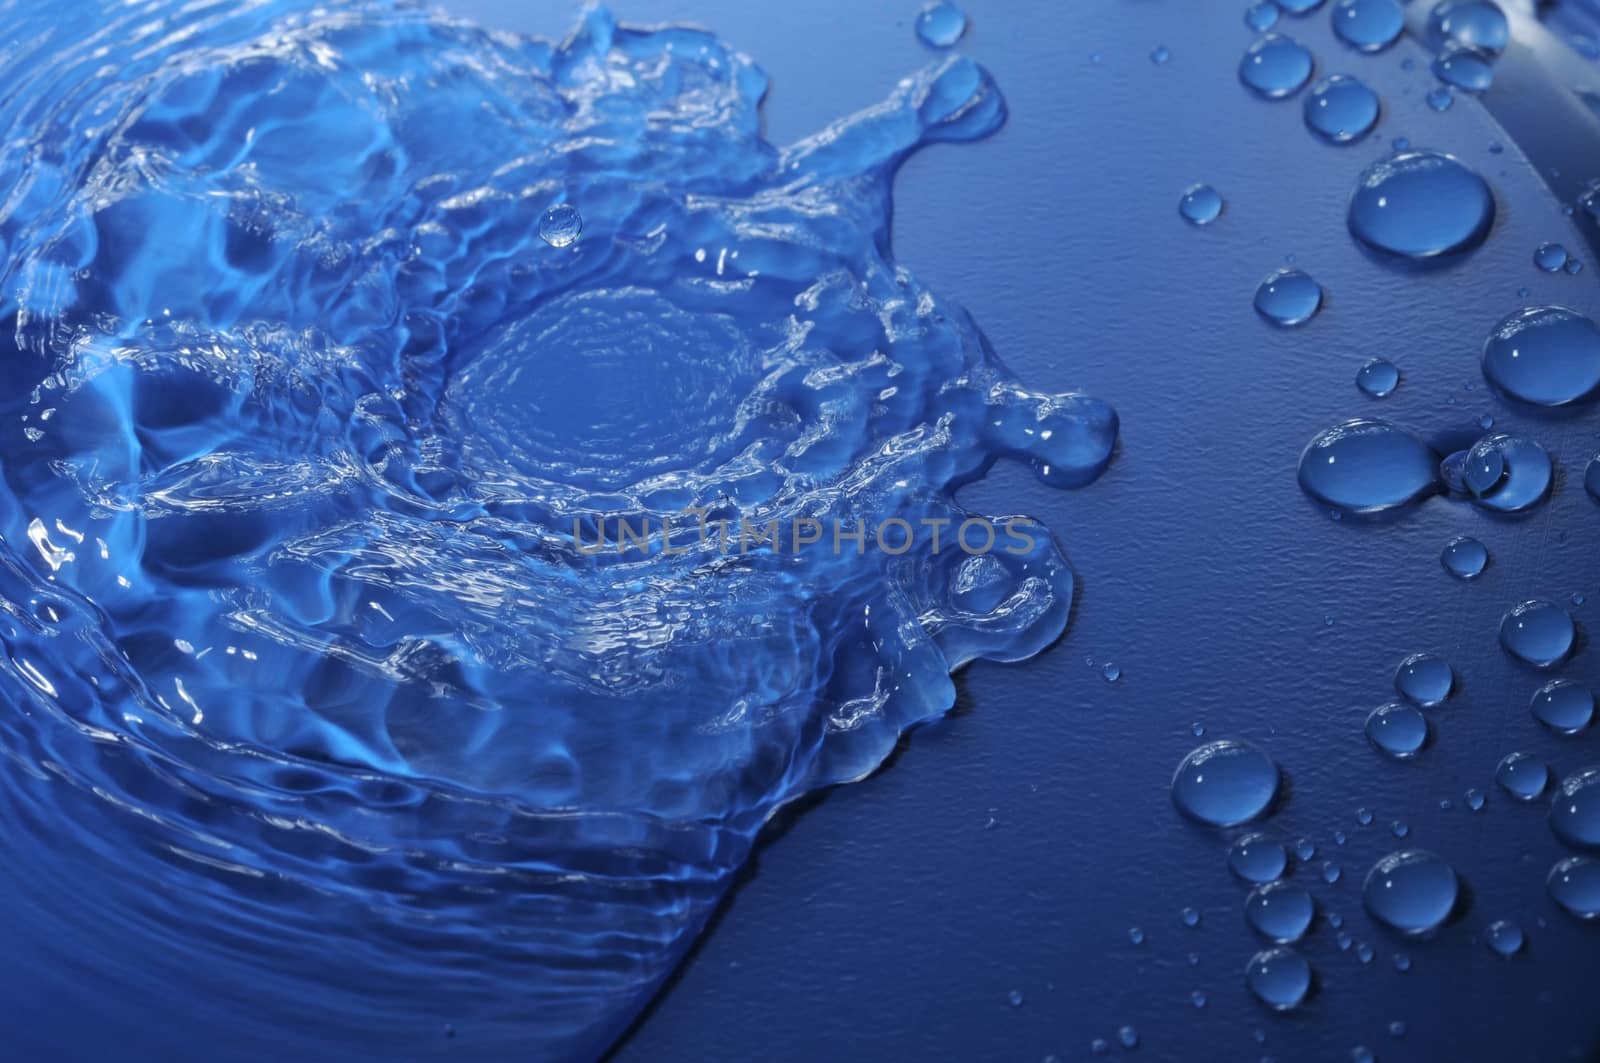 Blue Water Drops by underworld